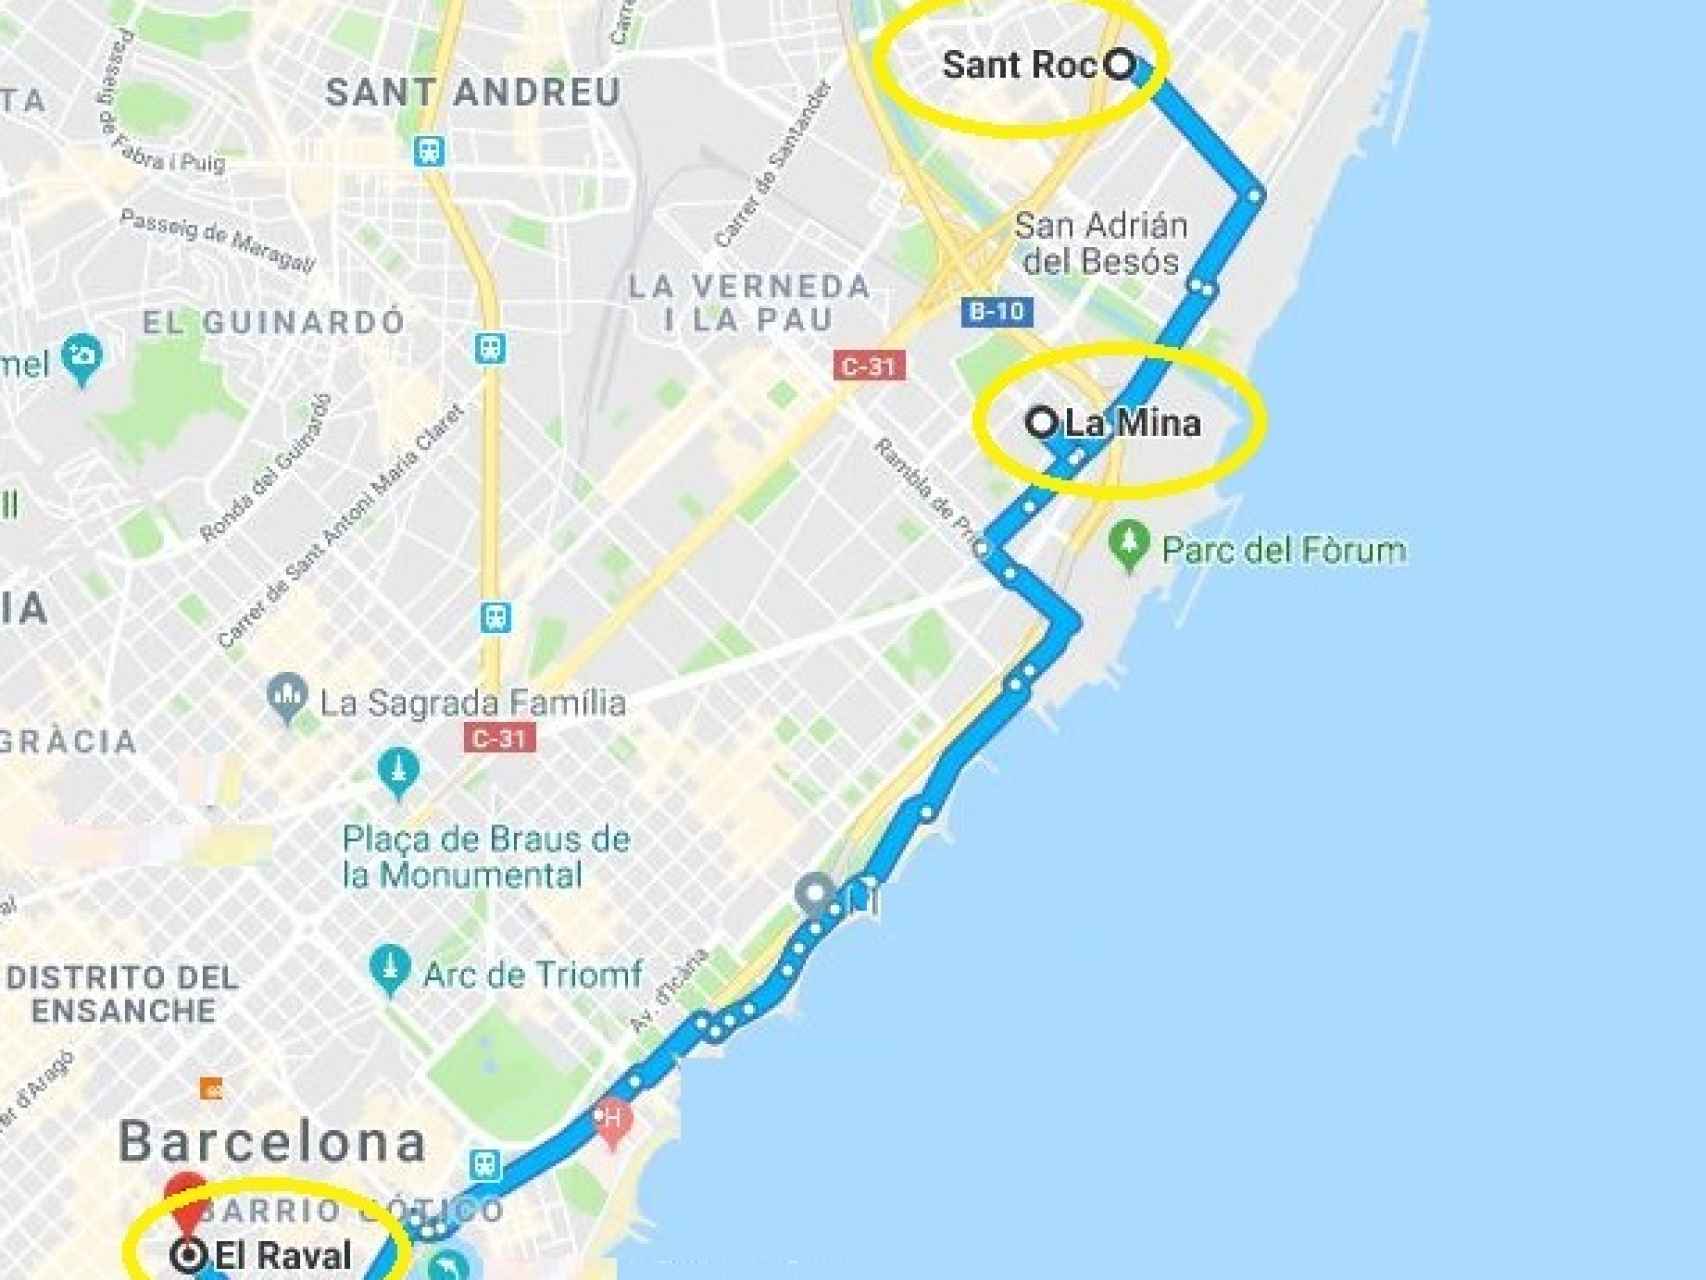 Los tres barrios están en el litoral barcelonés, a una distancia de menos de 10 kilómetros